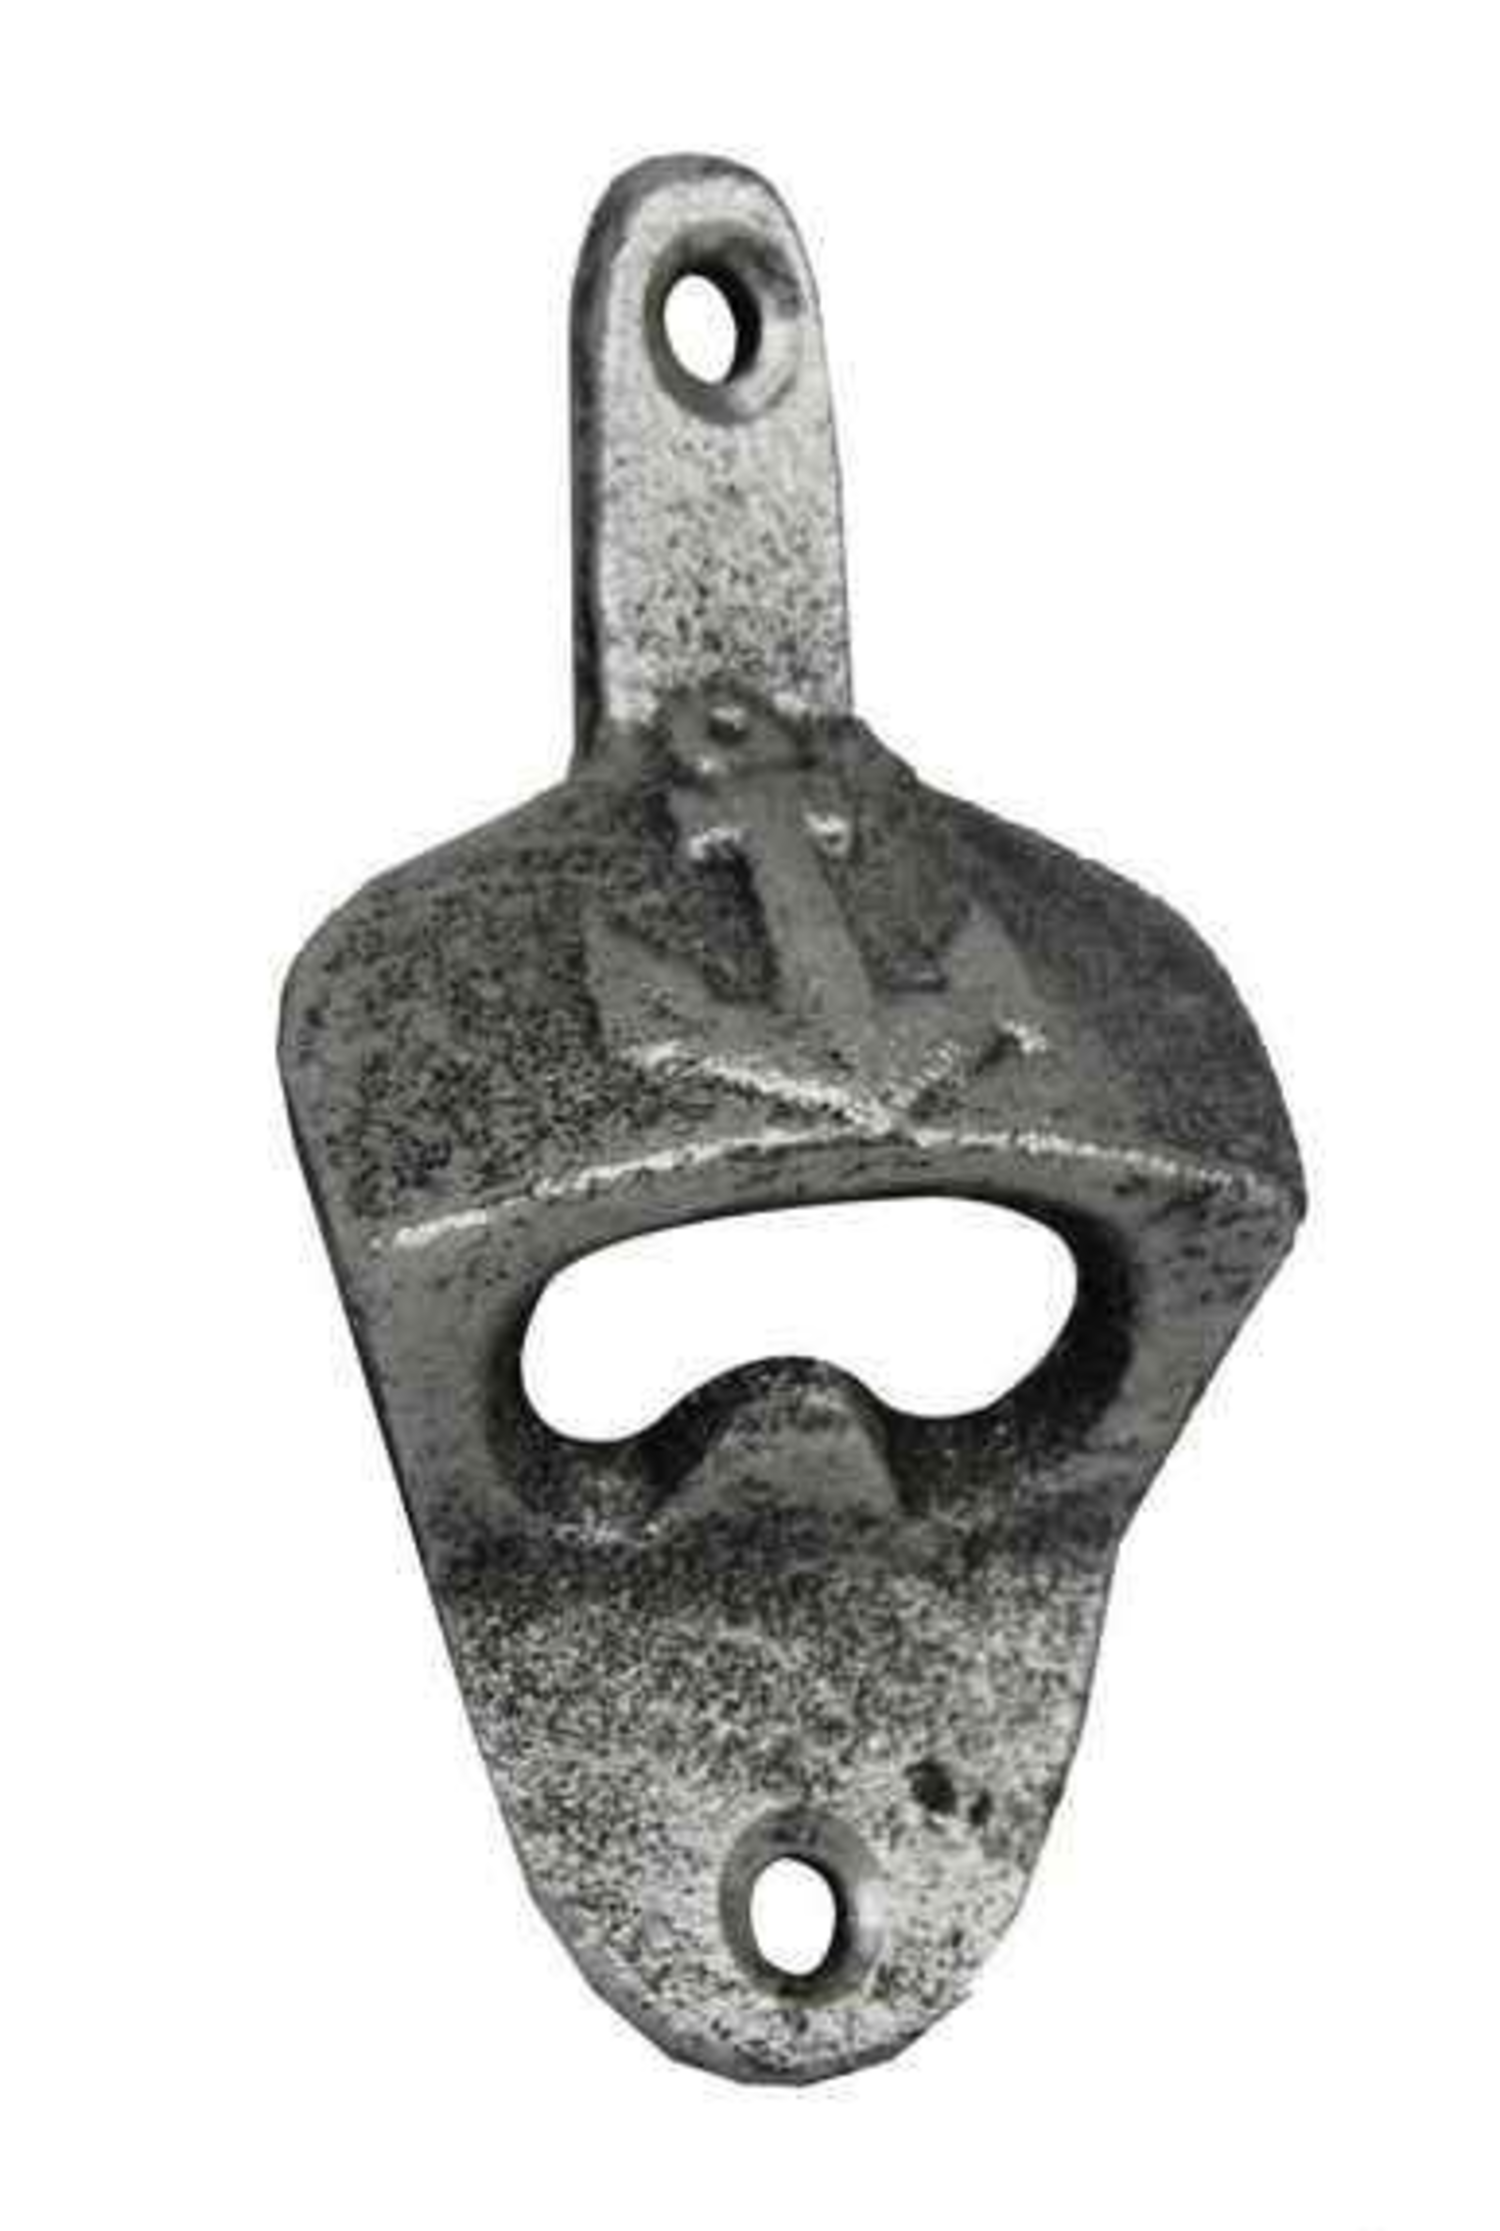 https://cdn.shoplightspeed.com/shops/610628/files/54754744/1500x4000x3/antique-silver-cast-iron-wall-mounted-anchor-bottl.jpg